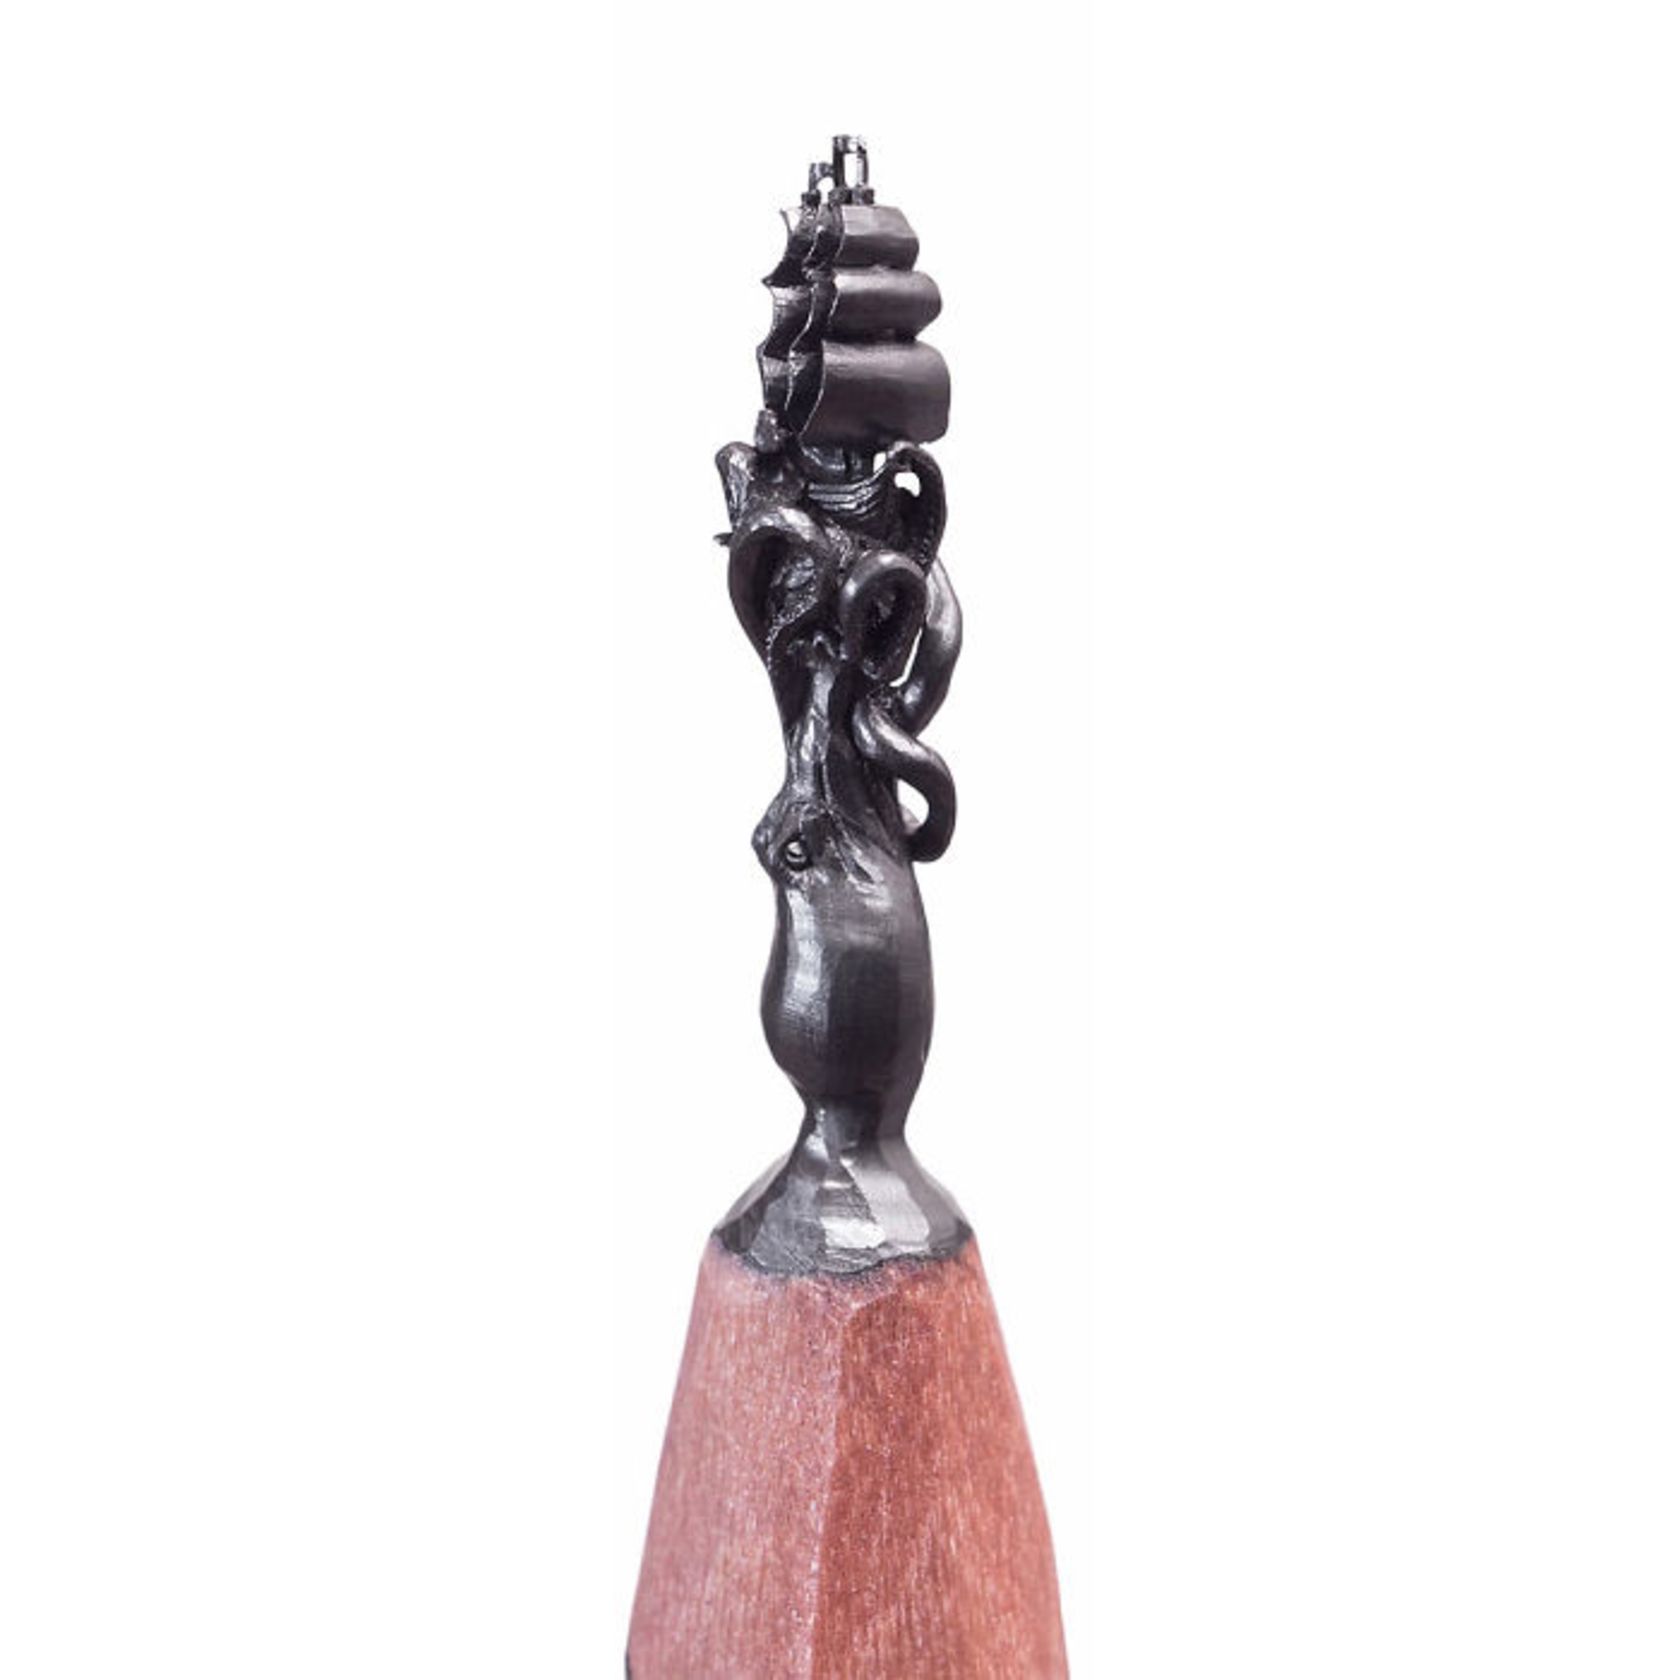 tip-of-pencil-miniature-sculptures-13-661ee7a3a55162c757fc593b